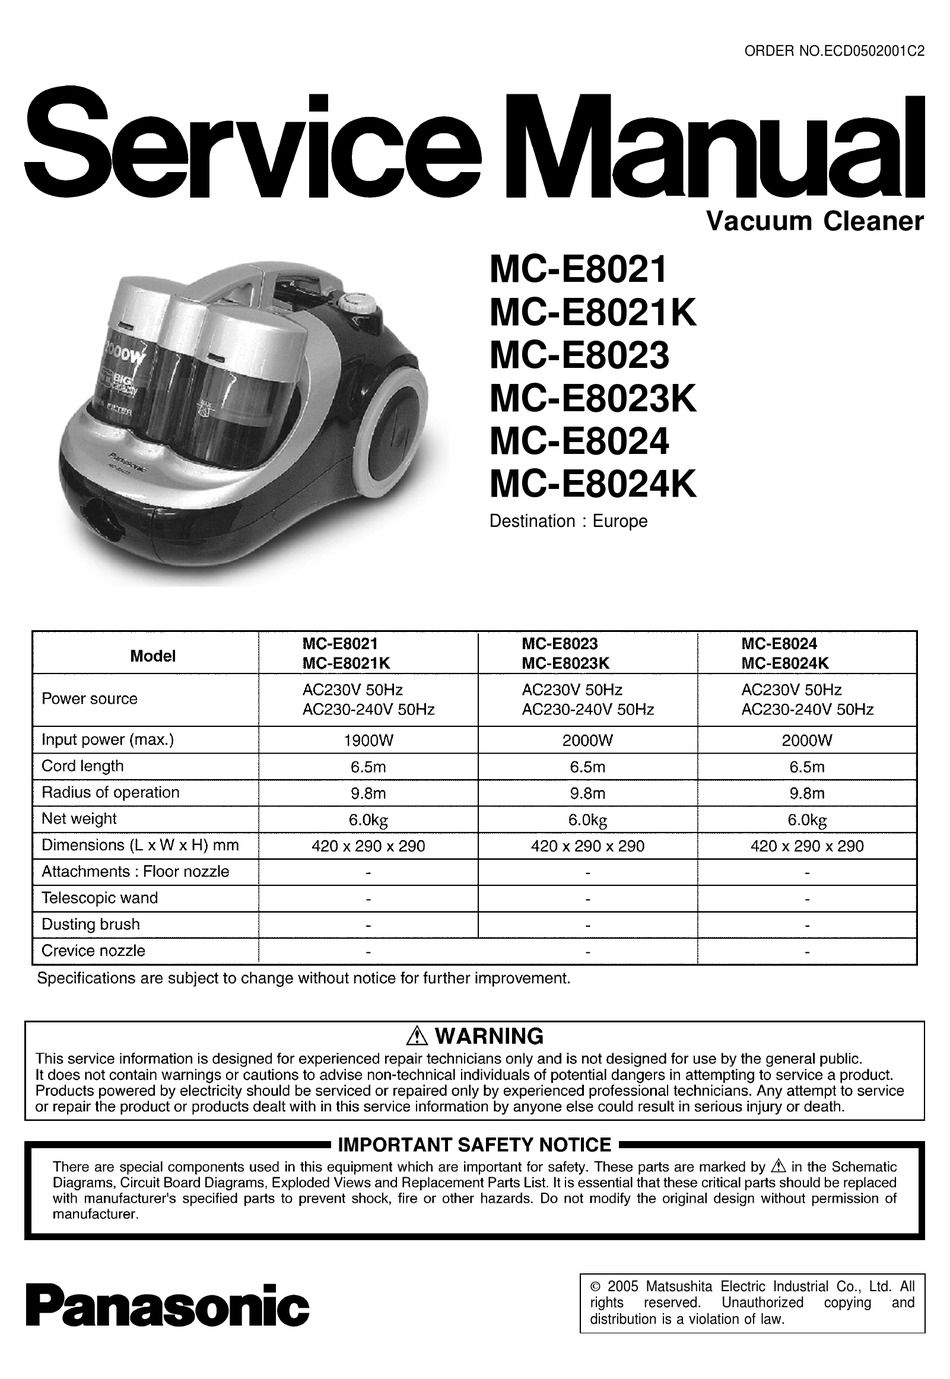 PANASONIC VACUUM CARBON BRUSH MC-E3001 E3003 MC-E3011 MC-E8021 MC-E8031 MC-E8035 